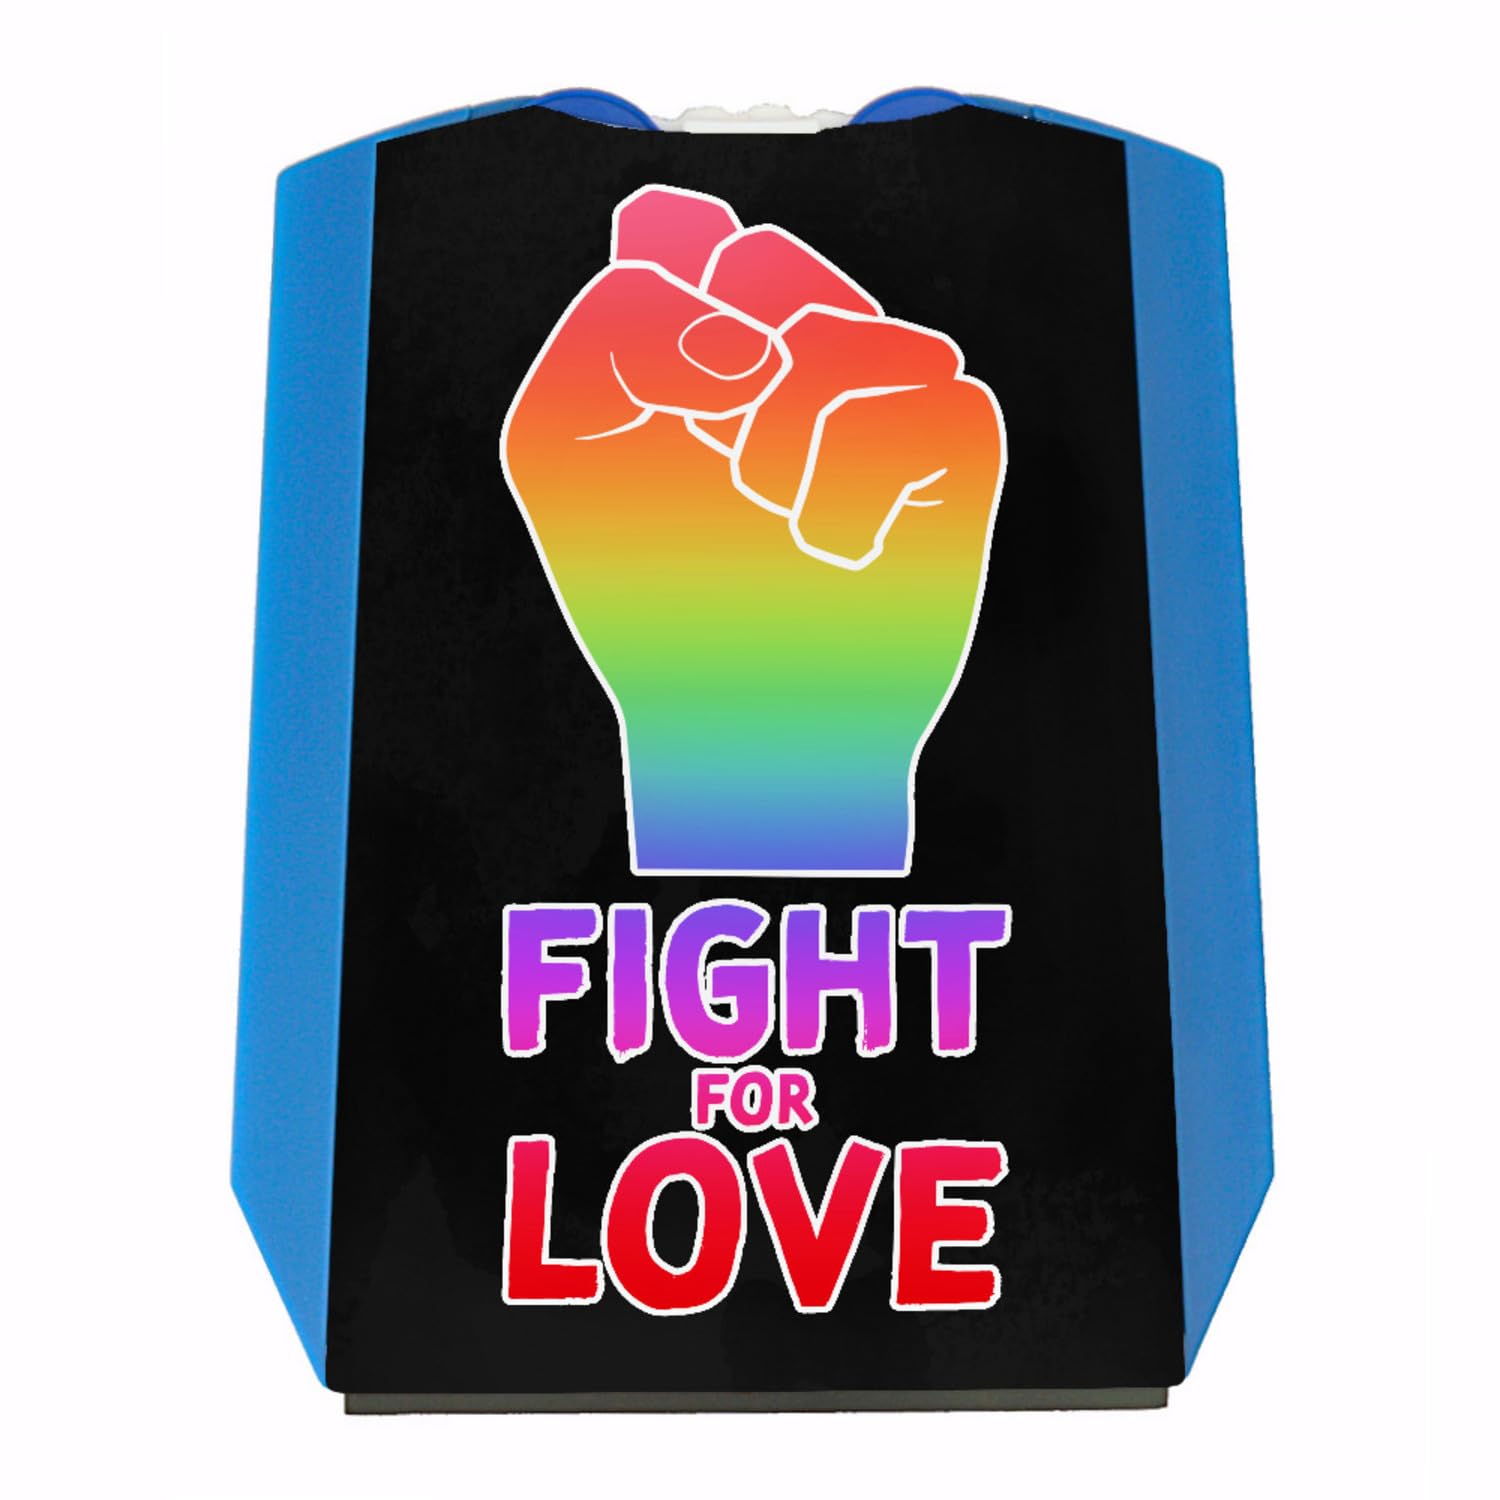 Fight for love Parkscheibe mit Faust in Regenbogenfarben 2 Einkaufswagenchips Parkuhr für das Auto mit Gay Pride LGBT-Motiv Statement für mehr Gleichberechtigung von speecheese